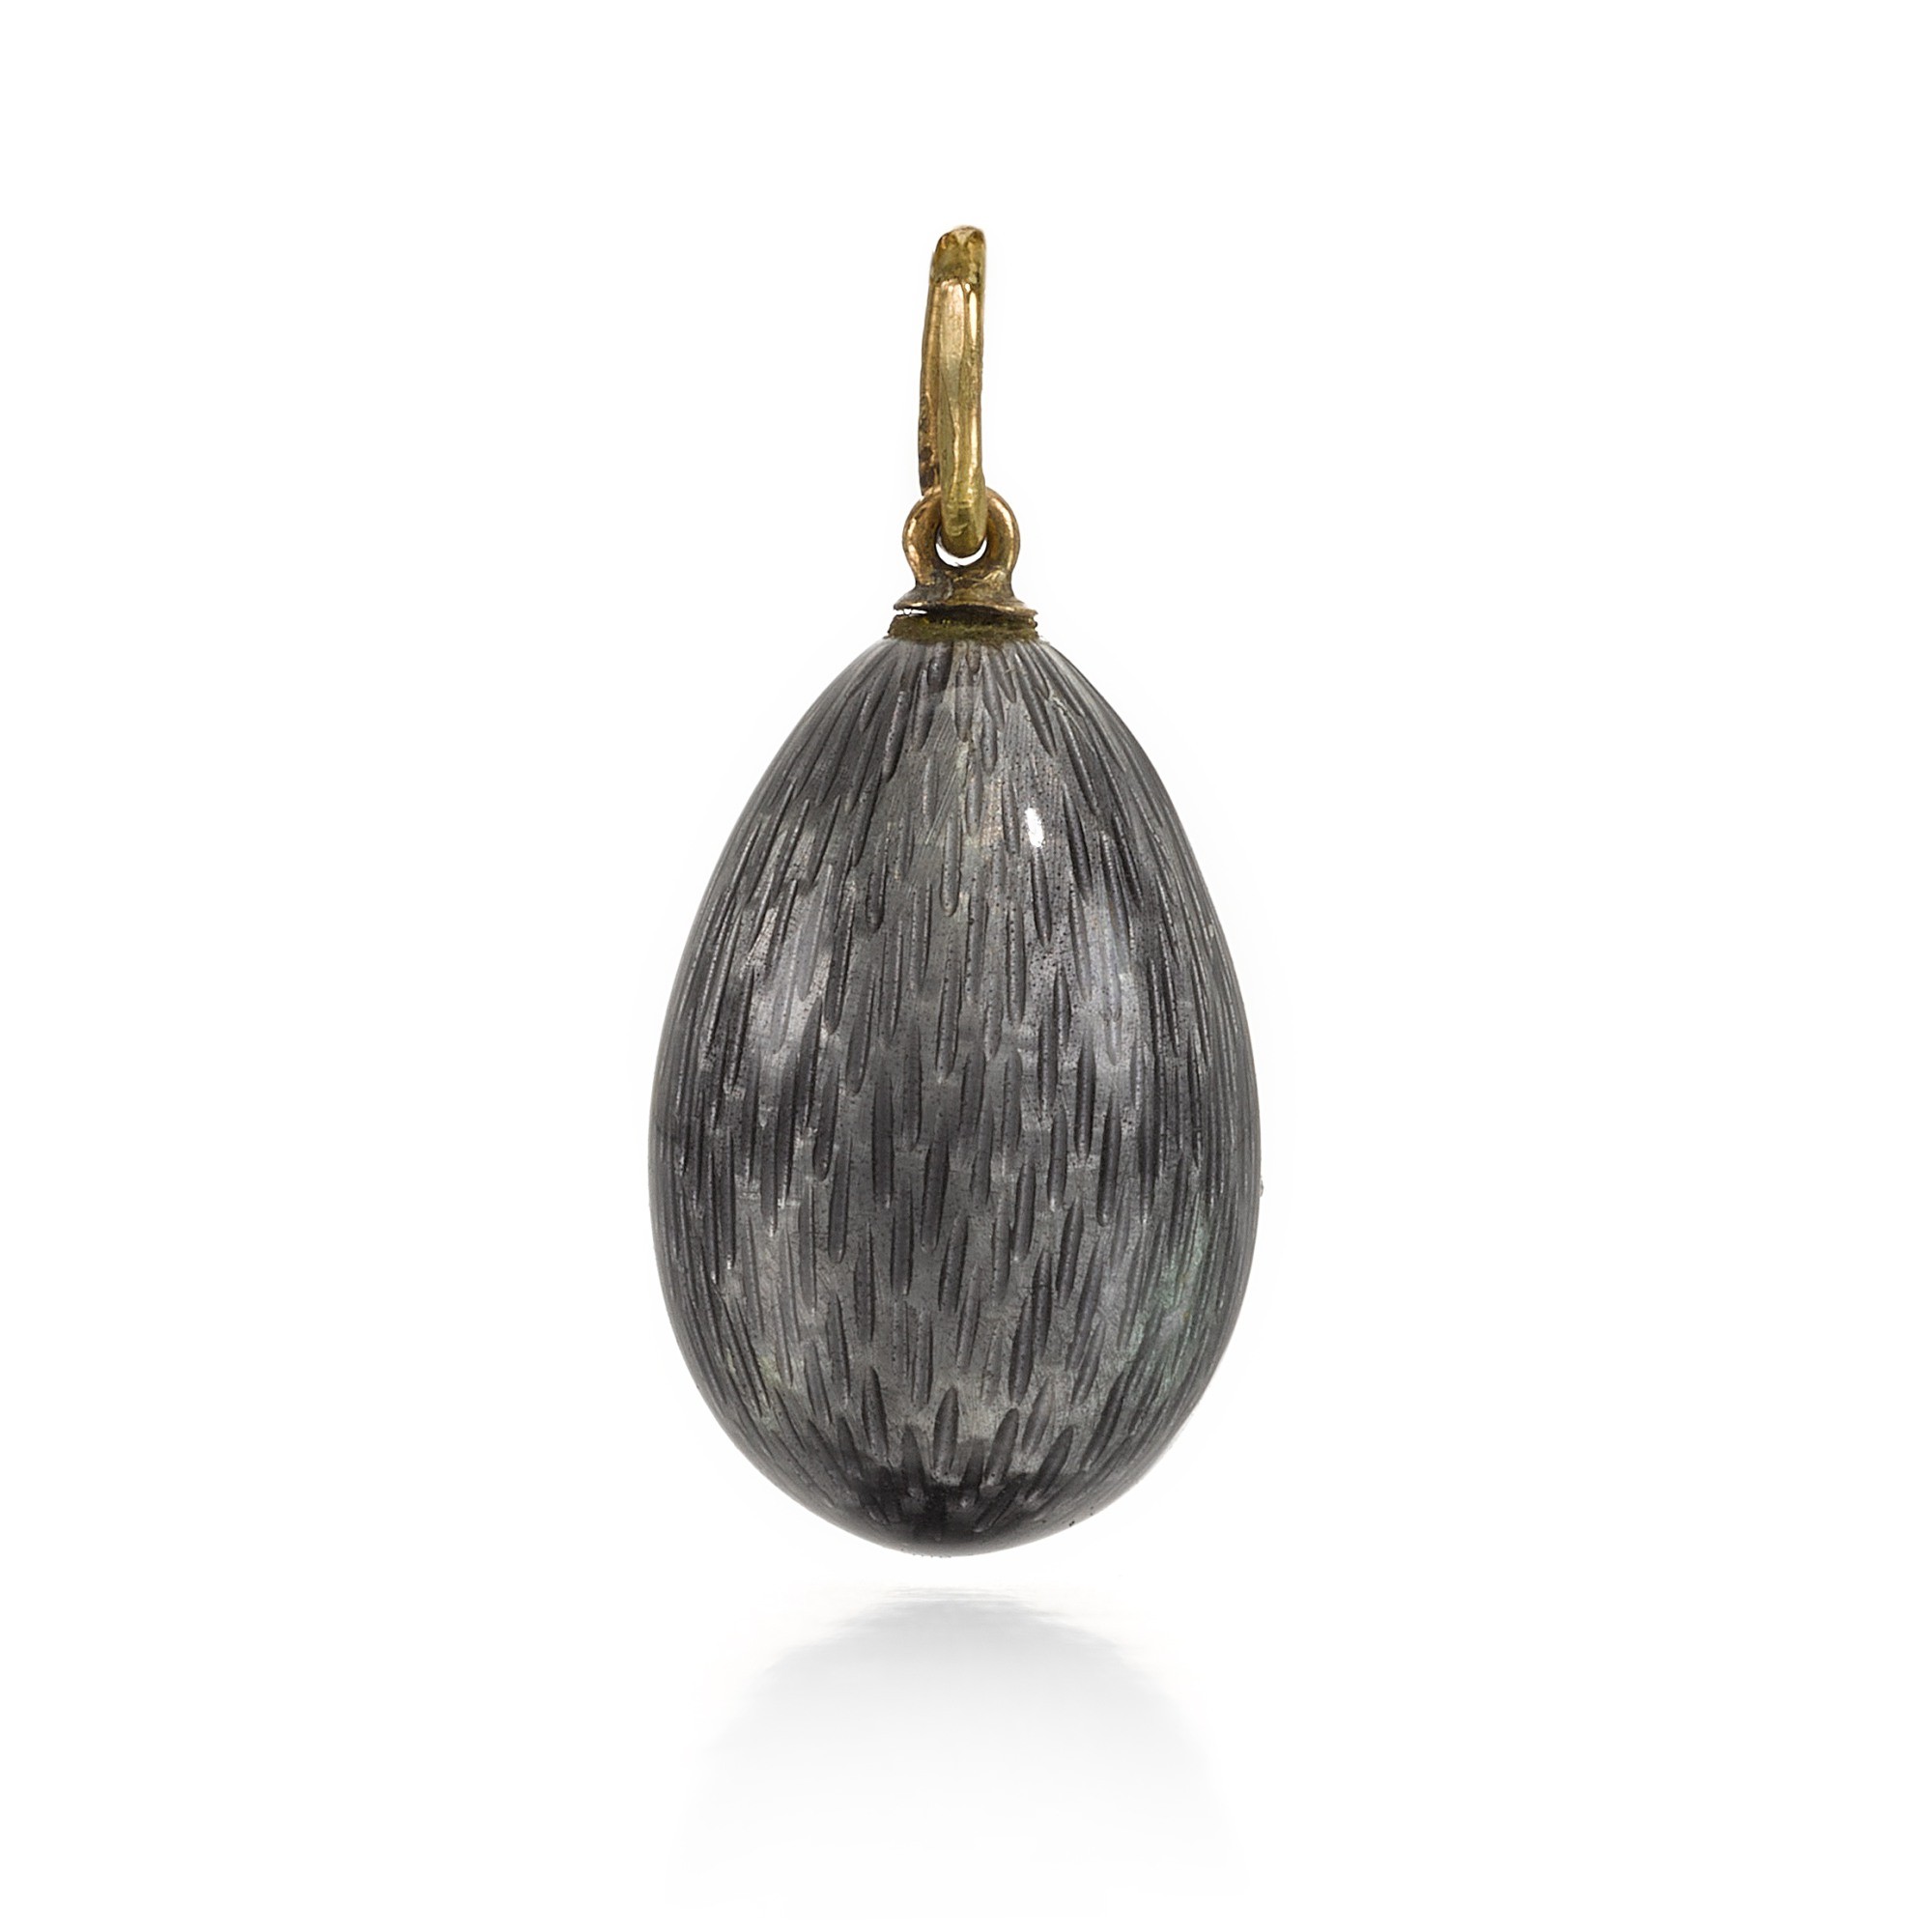 A Fabergé gold and guilloche enamel egg pendant, workmaster Henrik Wigström, St Petersburg, circa 19